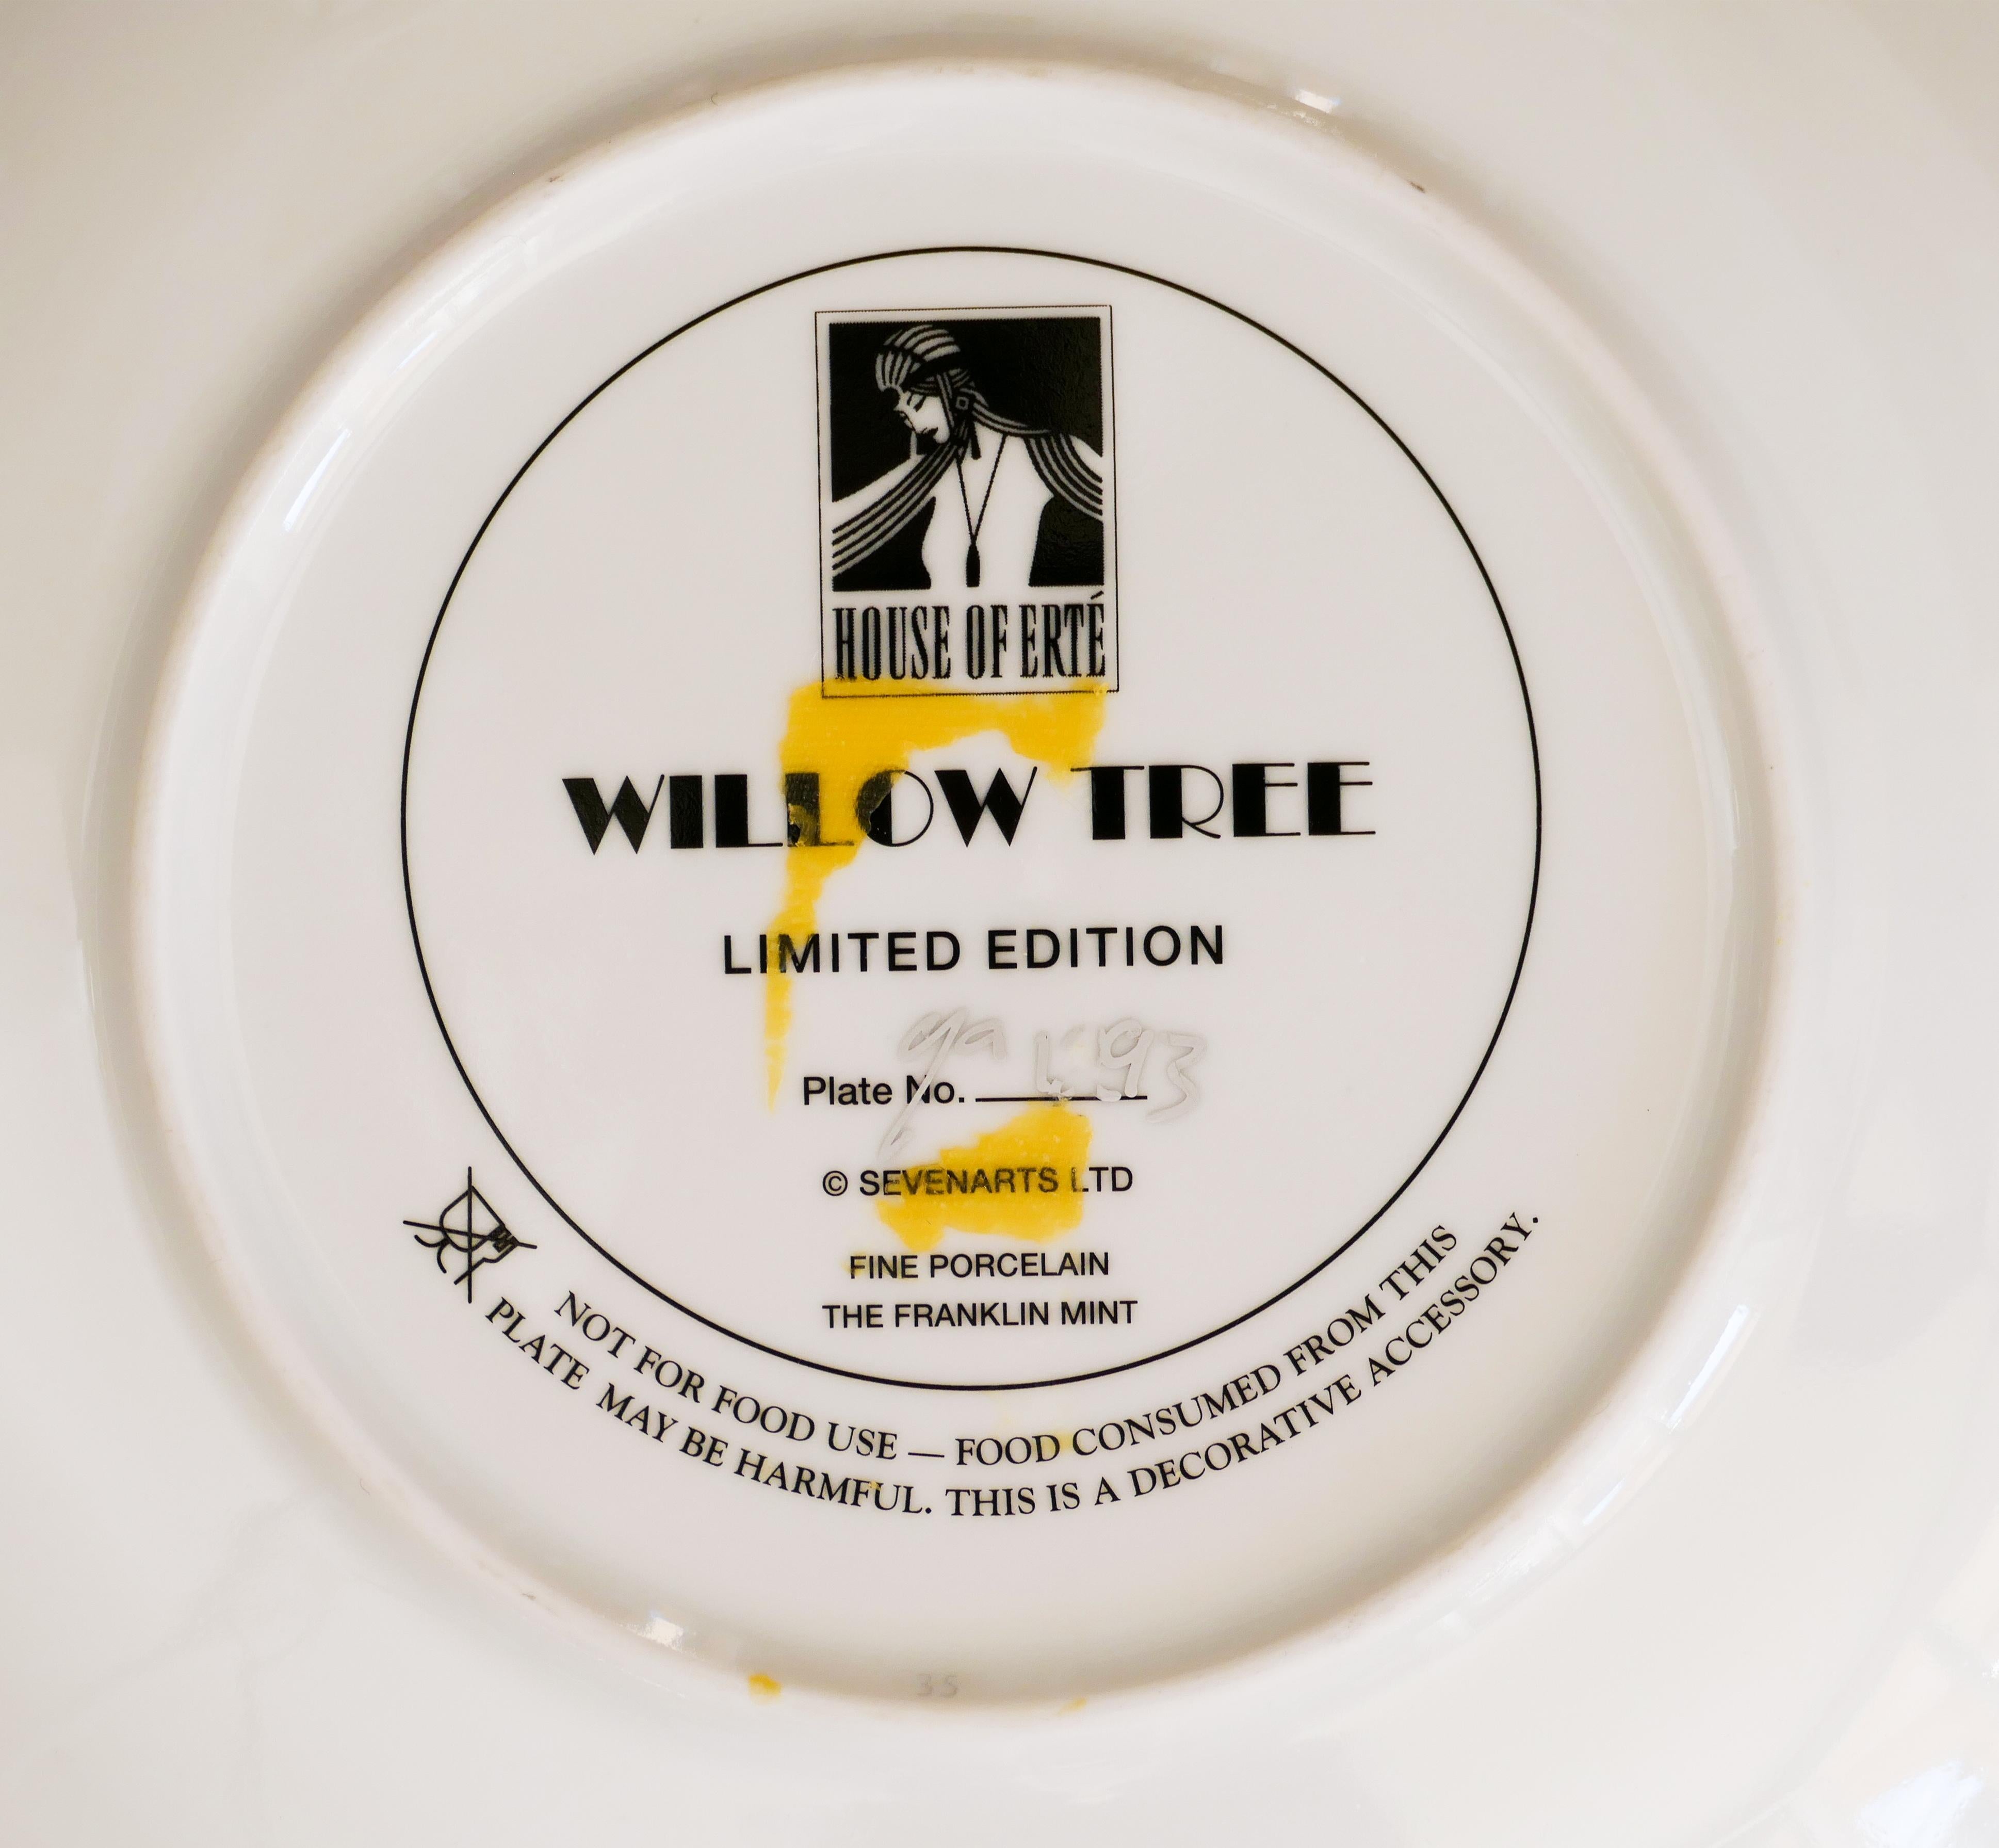 Der Willow Tree Plate ist ein origineller dekorativer Porzellanteller in limitierter Auflage, der in den 1990er Jahren hergestellt wurde.

Dieser schöne und sehr seltene Teller wurde für das House of Ertè in feinem Porzellan hergestellt.

Die Platte